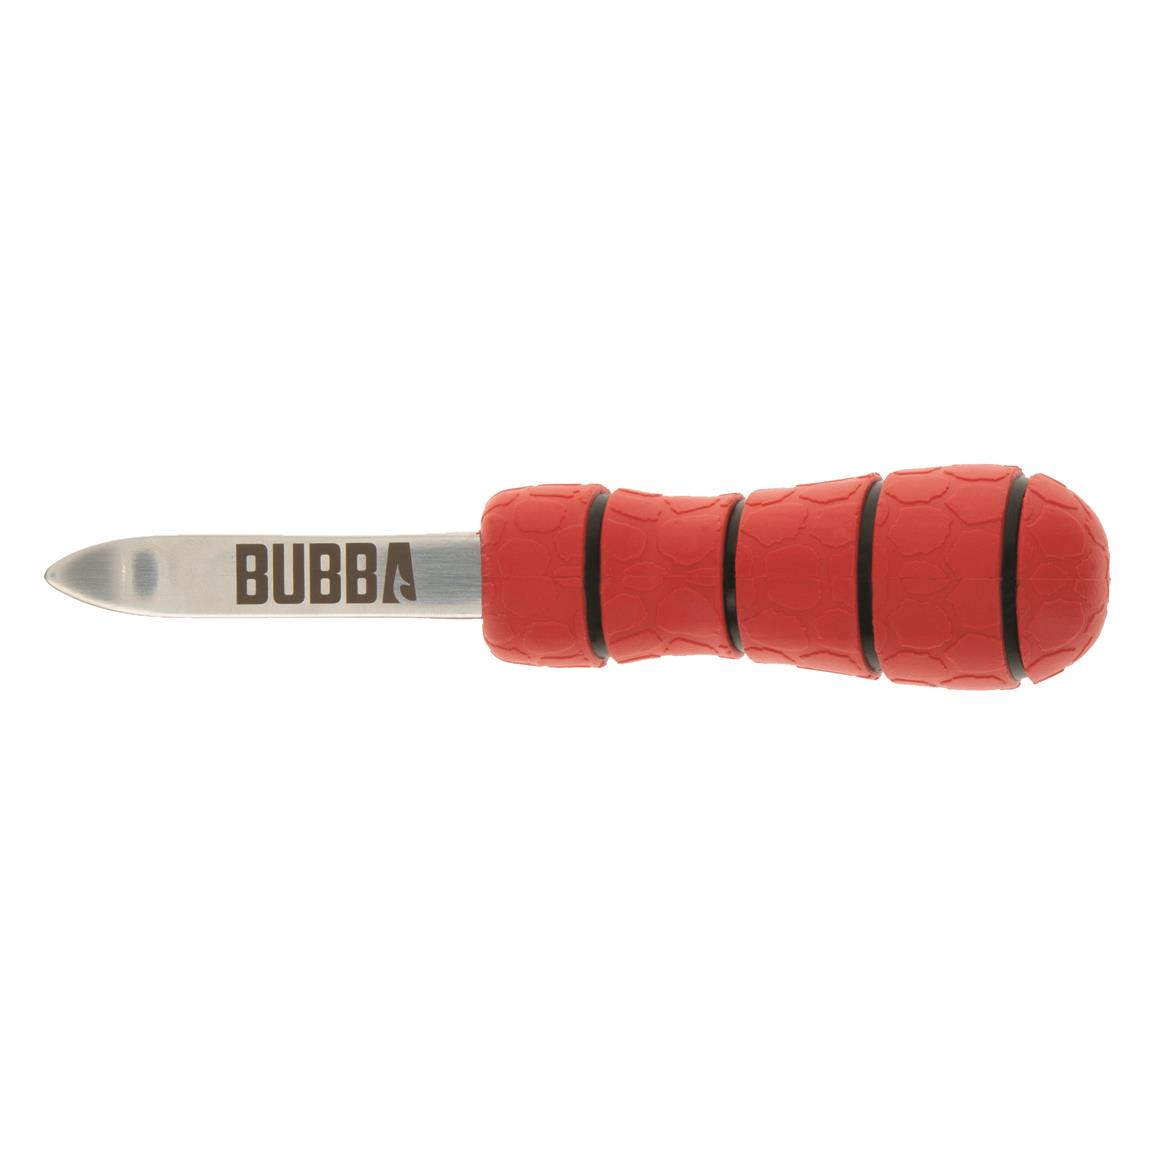 Bubba Paddoc Shucking Knife